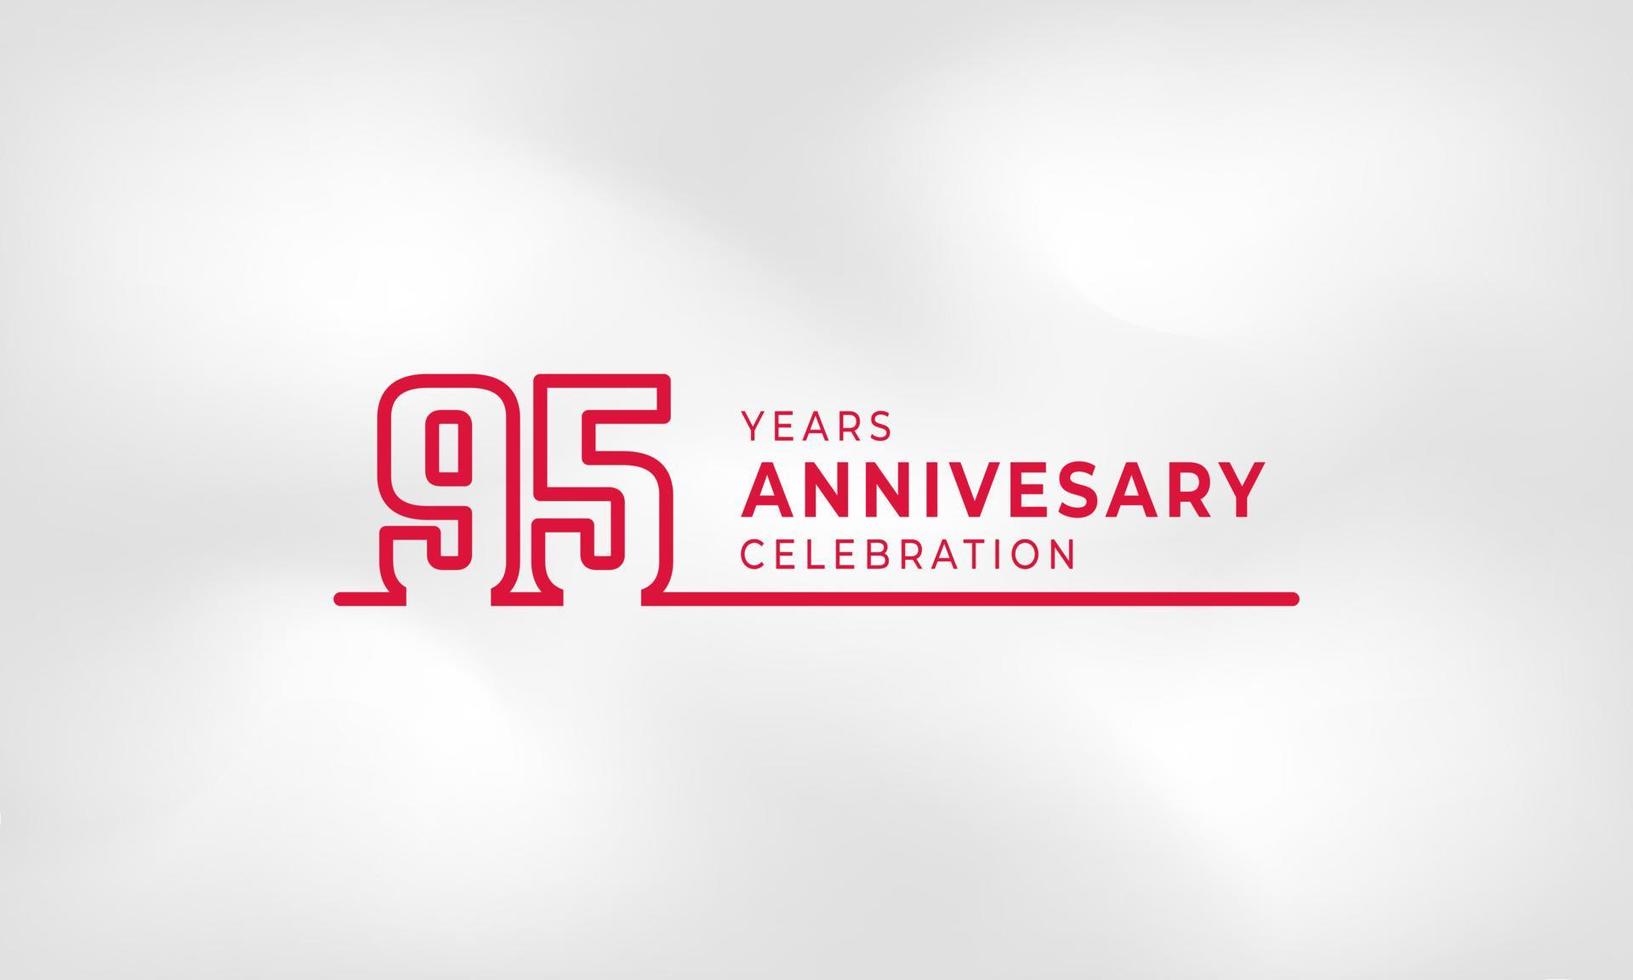 Célébration de l'anniversaire de 95 ans numéro de contour du logotype lié couleur rouge pour l'événement de célébration, le mariage, la carte de voeux et l'invitation isolés sur fond de texture blanche vecteur